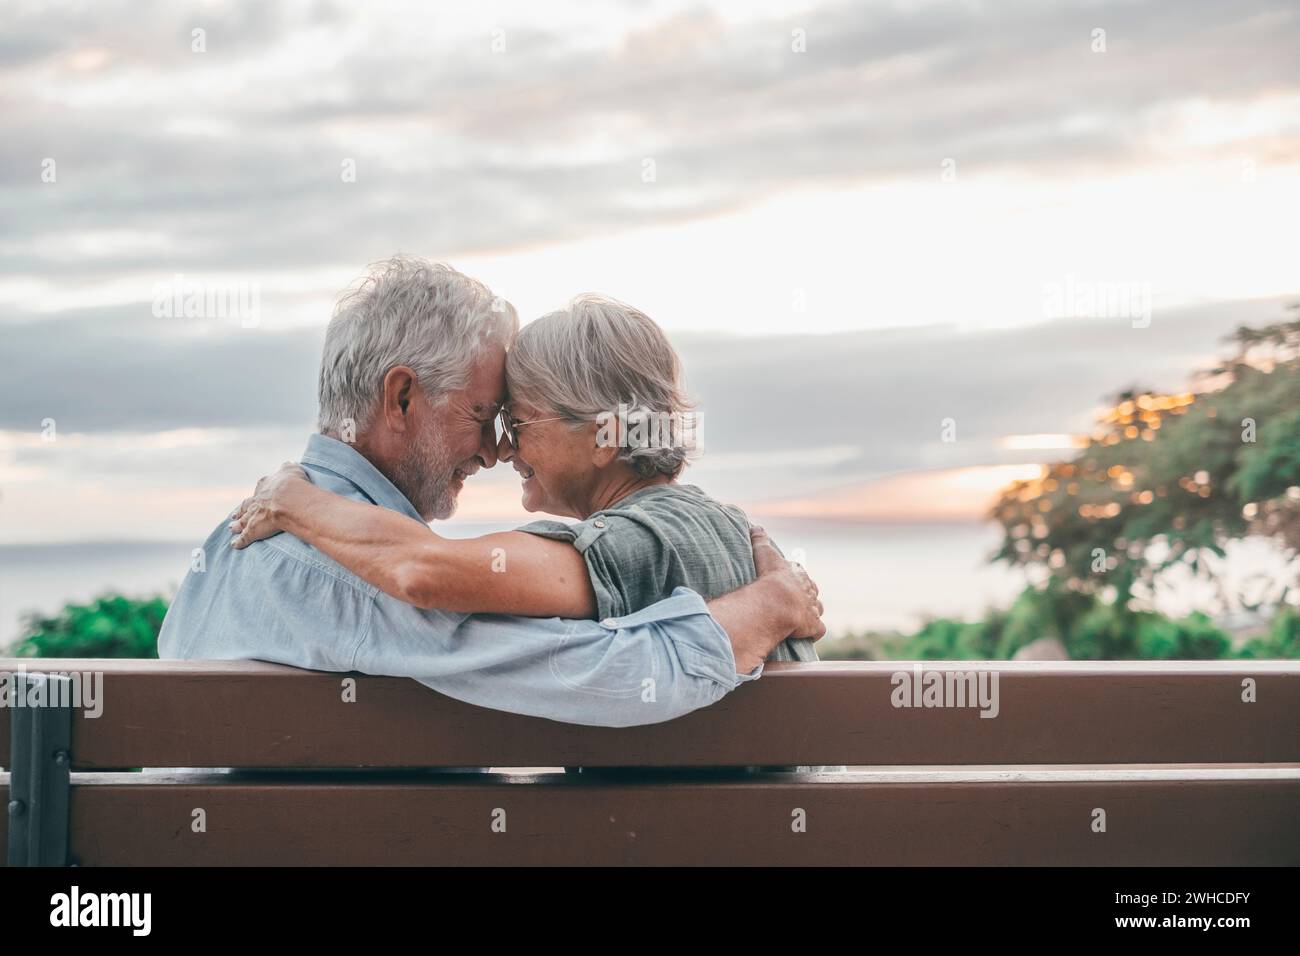 Kopfaufnahme Nahaufnahme Porträt glückliche grauhaarige Frau mittleren Alters, die sich an einen lächelnden älteren Ehemann kuschelt, genießt es, auf einer Bank im Park zu sitzen. Ein liebevolles, altes Familienpaar, das den Sonnenuntergang umschließt. Stockfoto